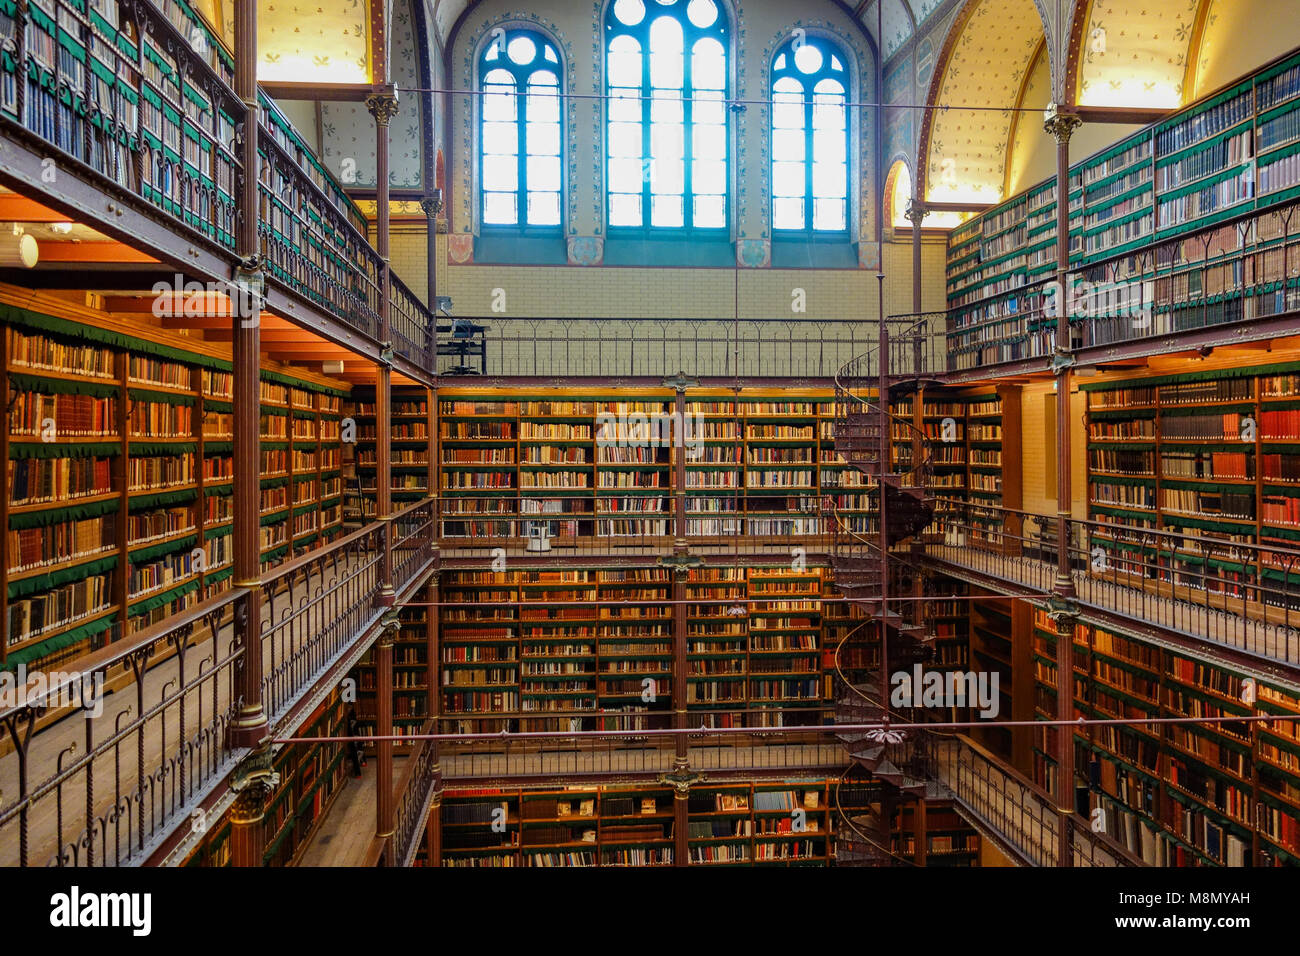 Dec 20, 2017 - die Bibliothek des Rijksmuseum in Amsterdam. Eine der schönsten berühmte Bibliotheken und Lesesäle in der Welt Stockfoto